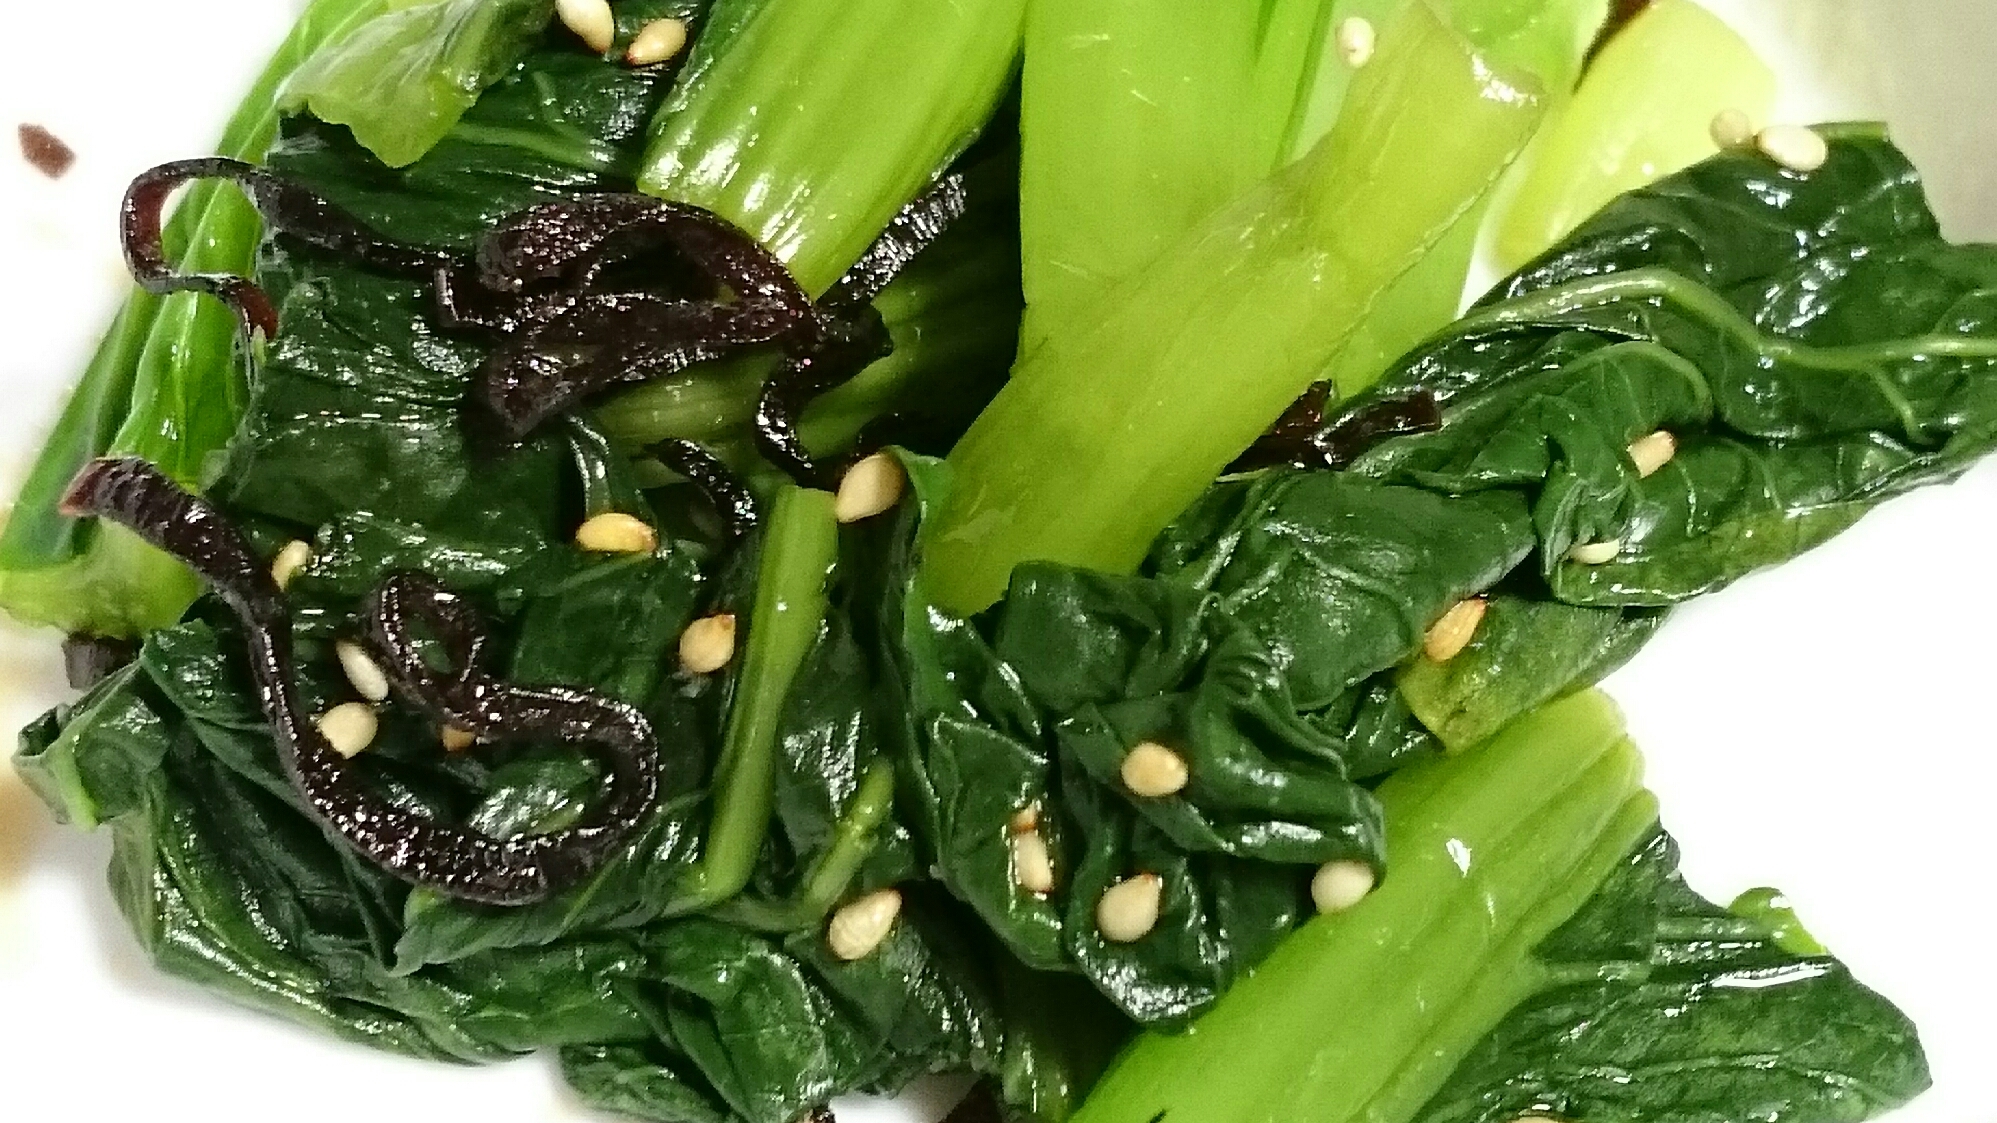 小松菜と塩昆布の和え物